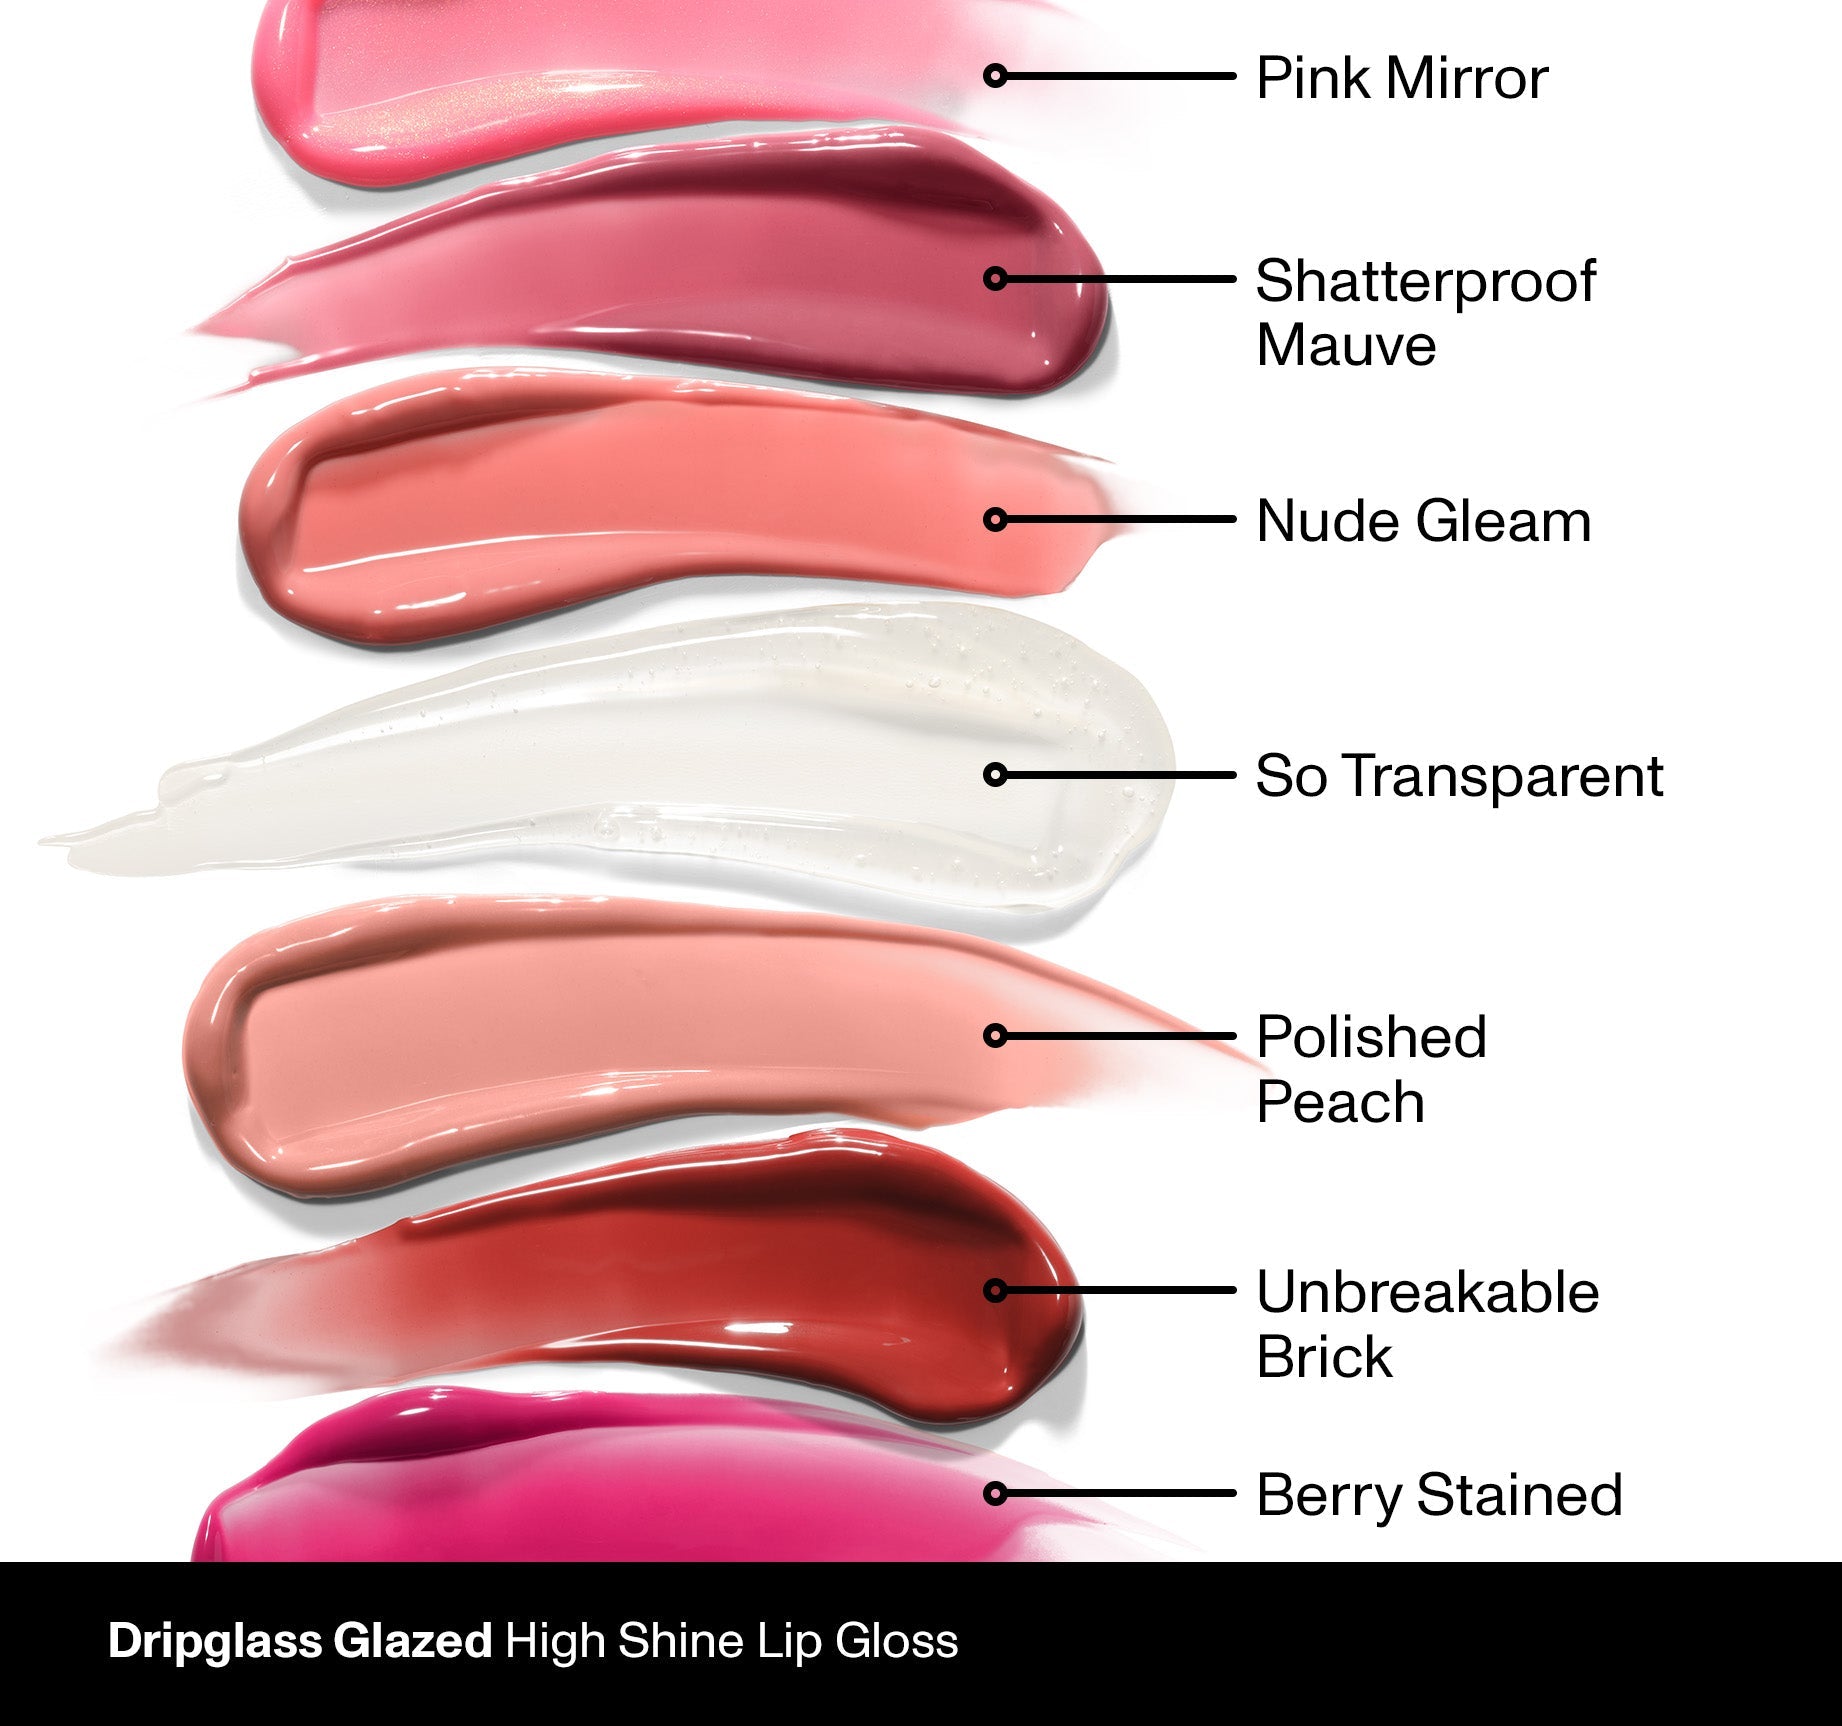 Dripglass Glazed High Shine Lip Gloss - Polished Peach - Image 6